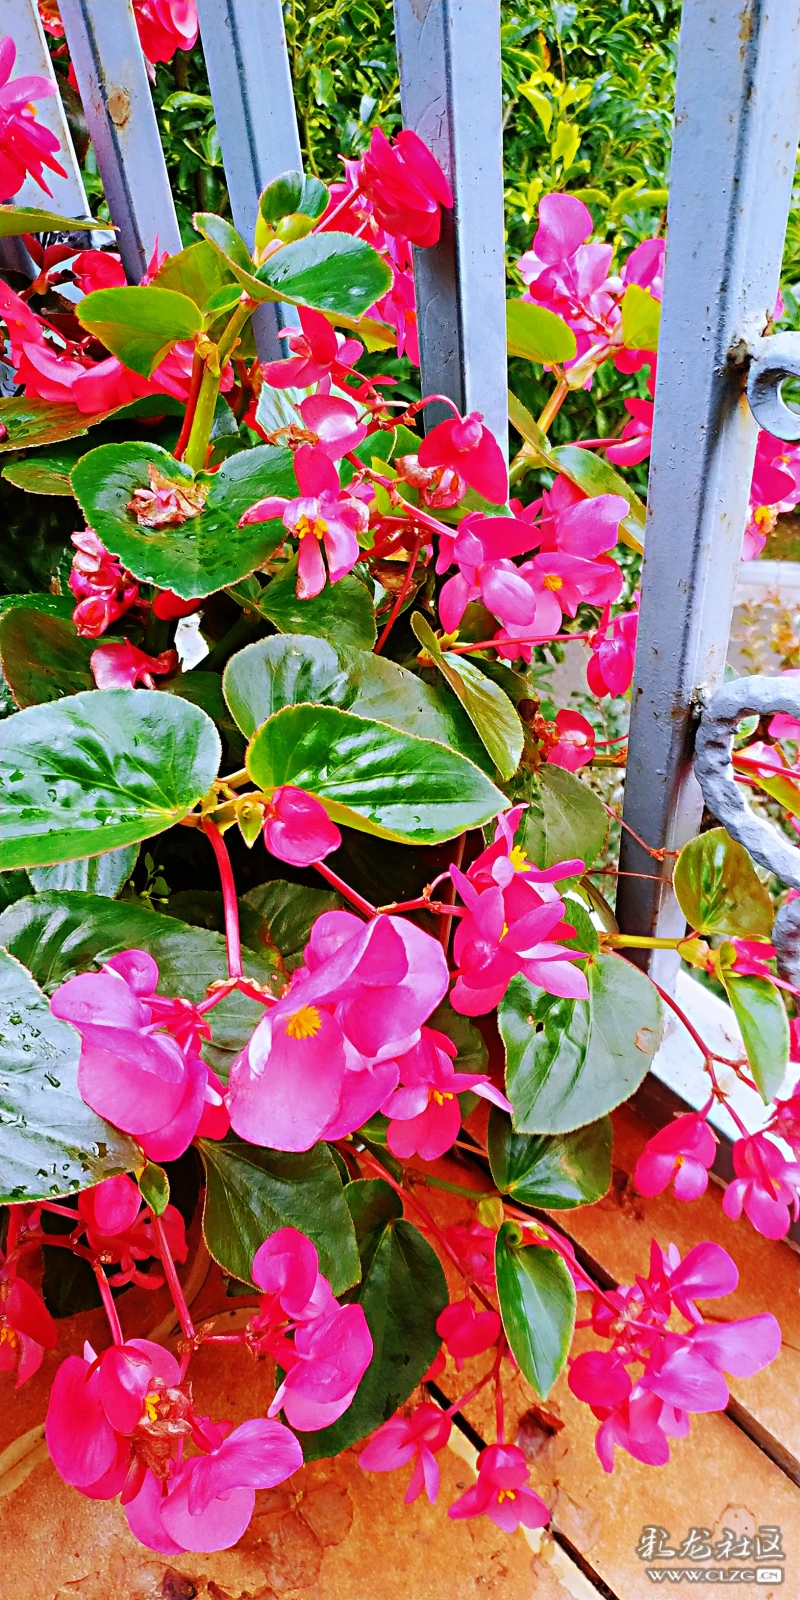 玻璃海棠花的品种极多,花的颜色比较的娇艳,姿态也比较的优美,茎,叶